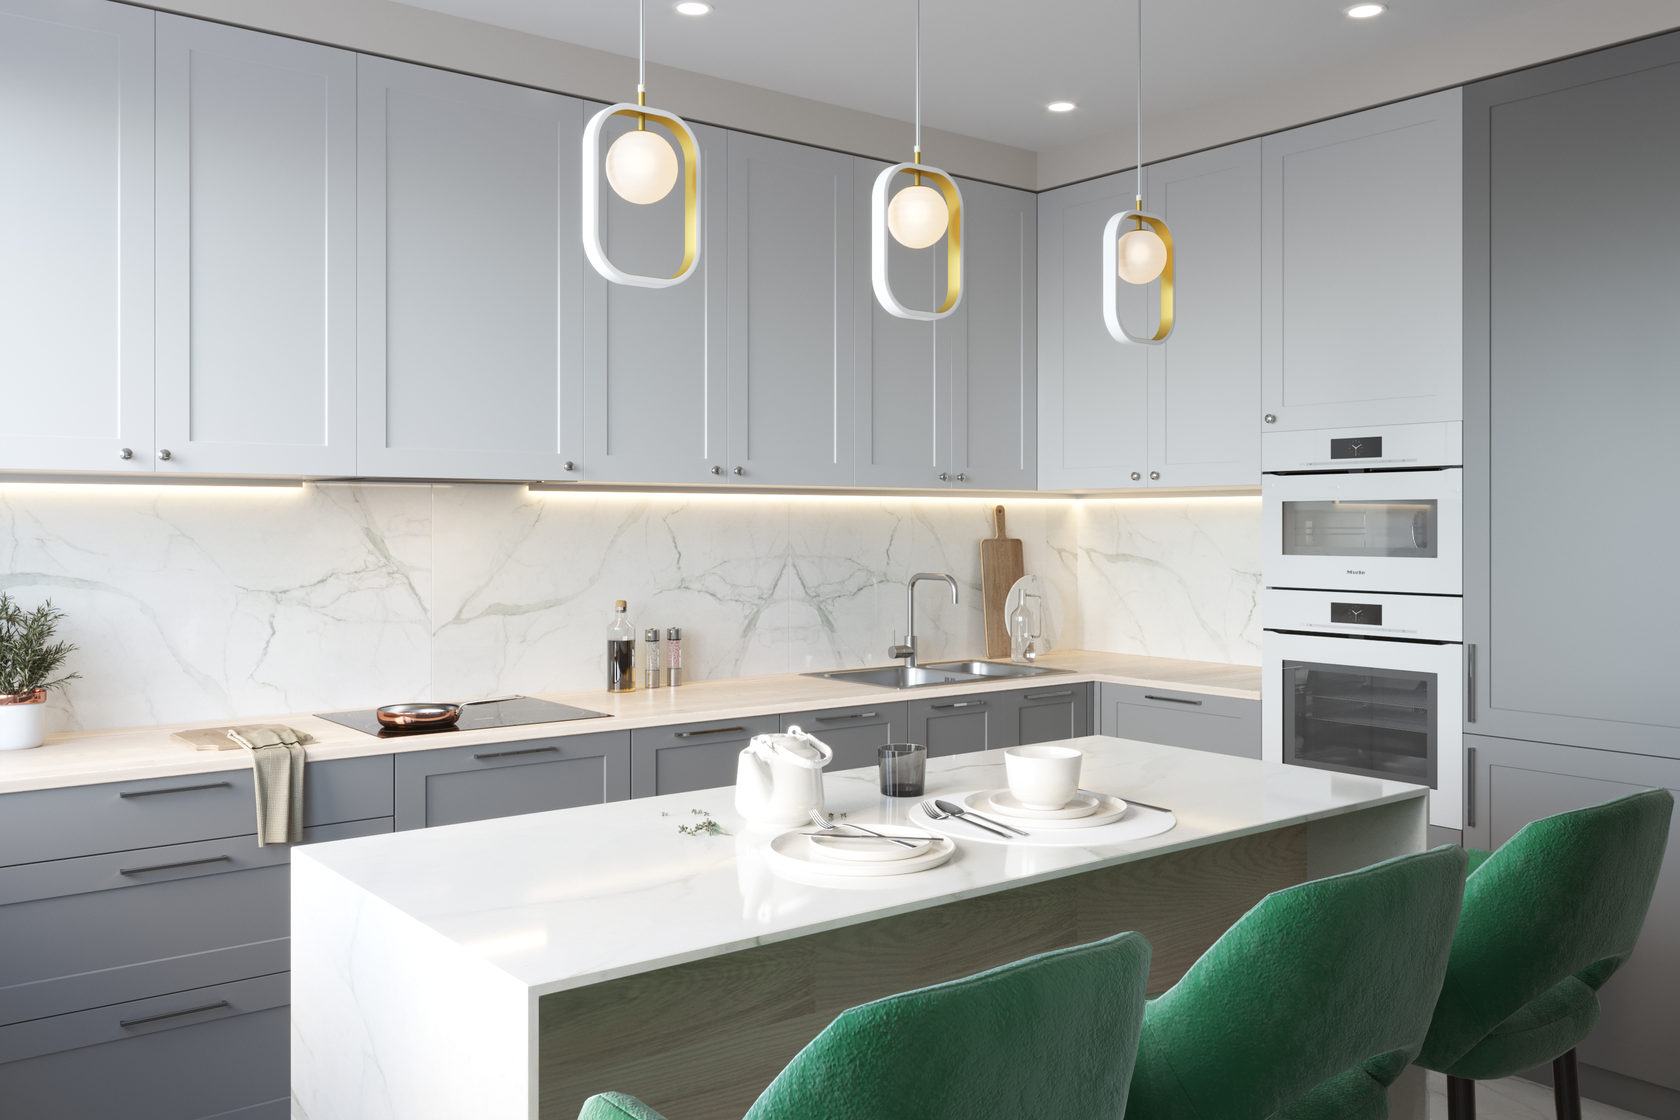 Phòng bếp sử dụng cấu trúc thiết kế kiểu chữ L với hệ tủ bếp trên và dưới đồng bộ màu xám, backsplash ốp đá cẩm thạch hoa văn sang trọng gợi nhớ đến lối vào căn hộ.